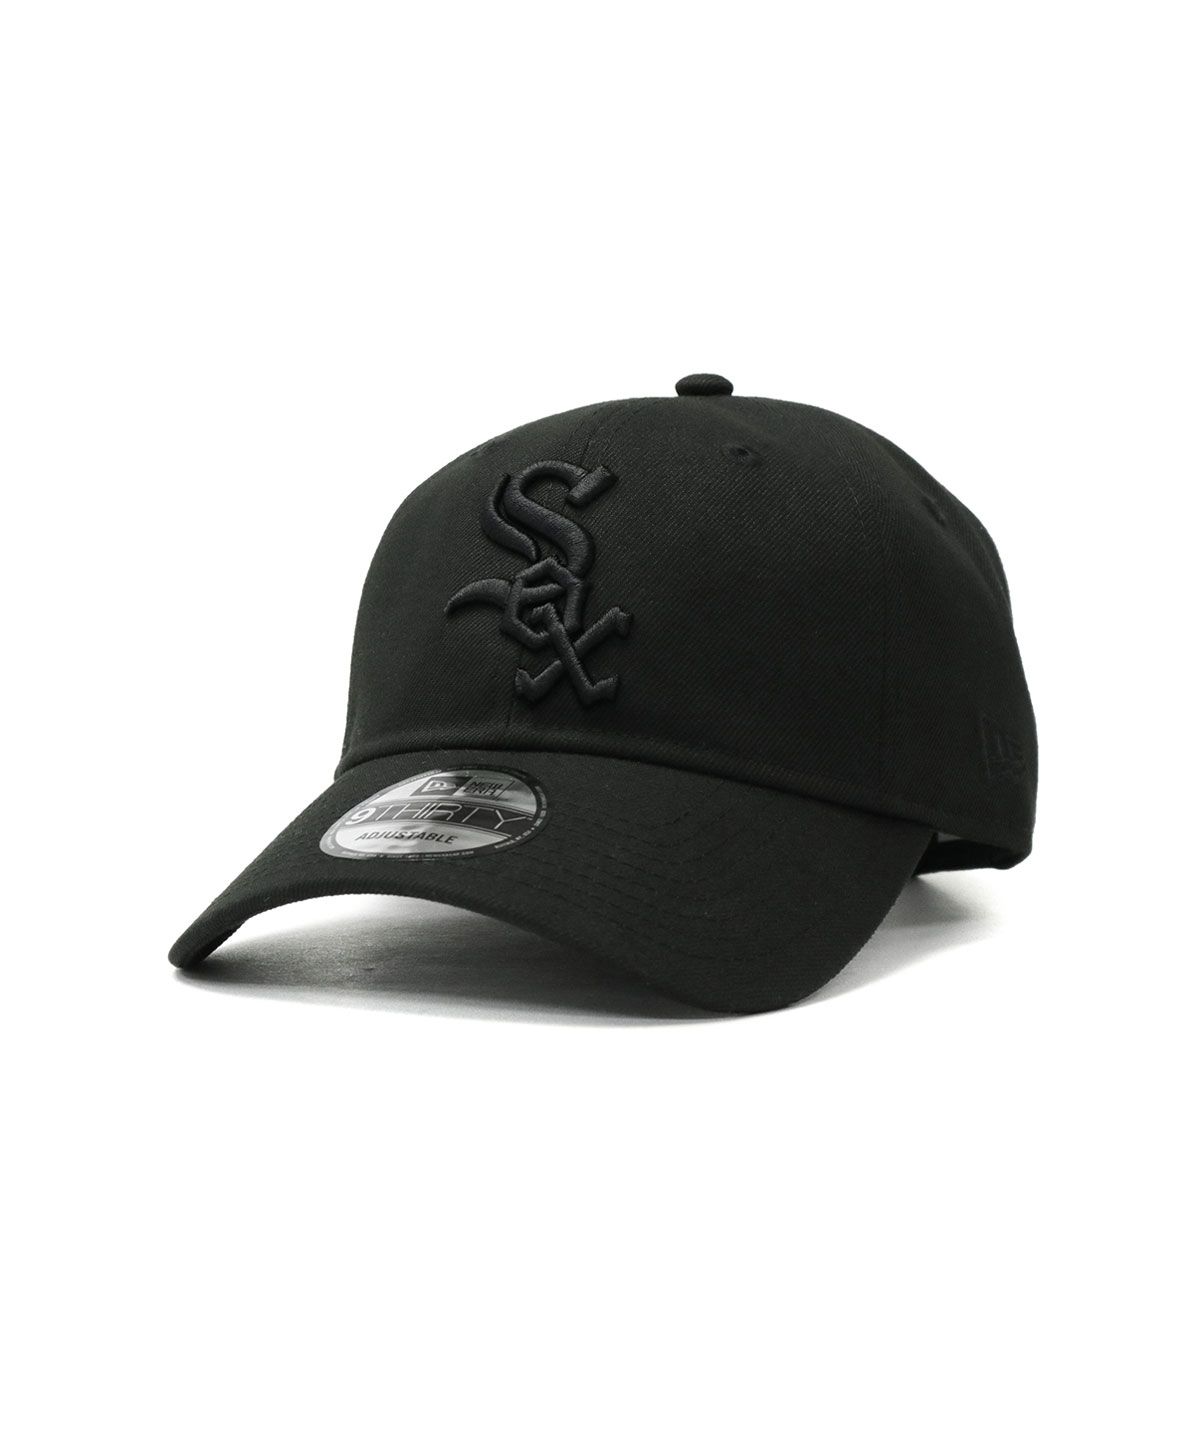 オフィシャルのグッズですDIIV 新品 ベースボールキャップ 帽子 cap 黒 ダイブ バンドtシャツ